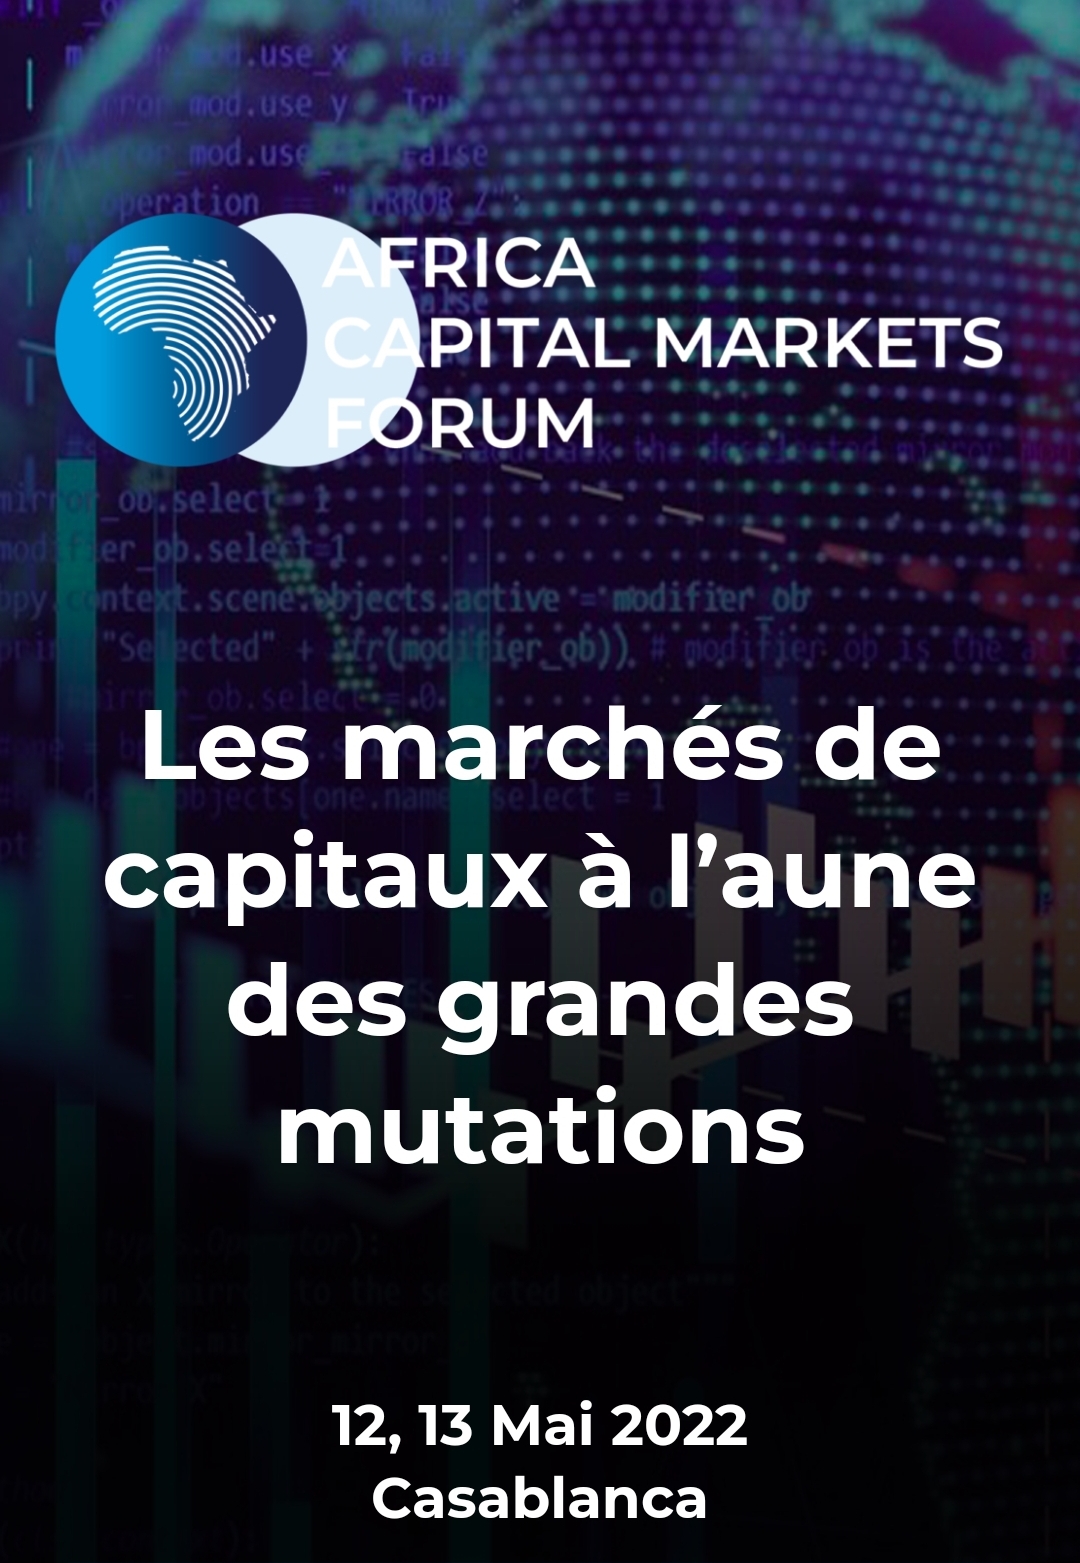 Casablanca accueille la nouvelle édition de l’Africa Capital Markets Forum (12-13 mai 2022)